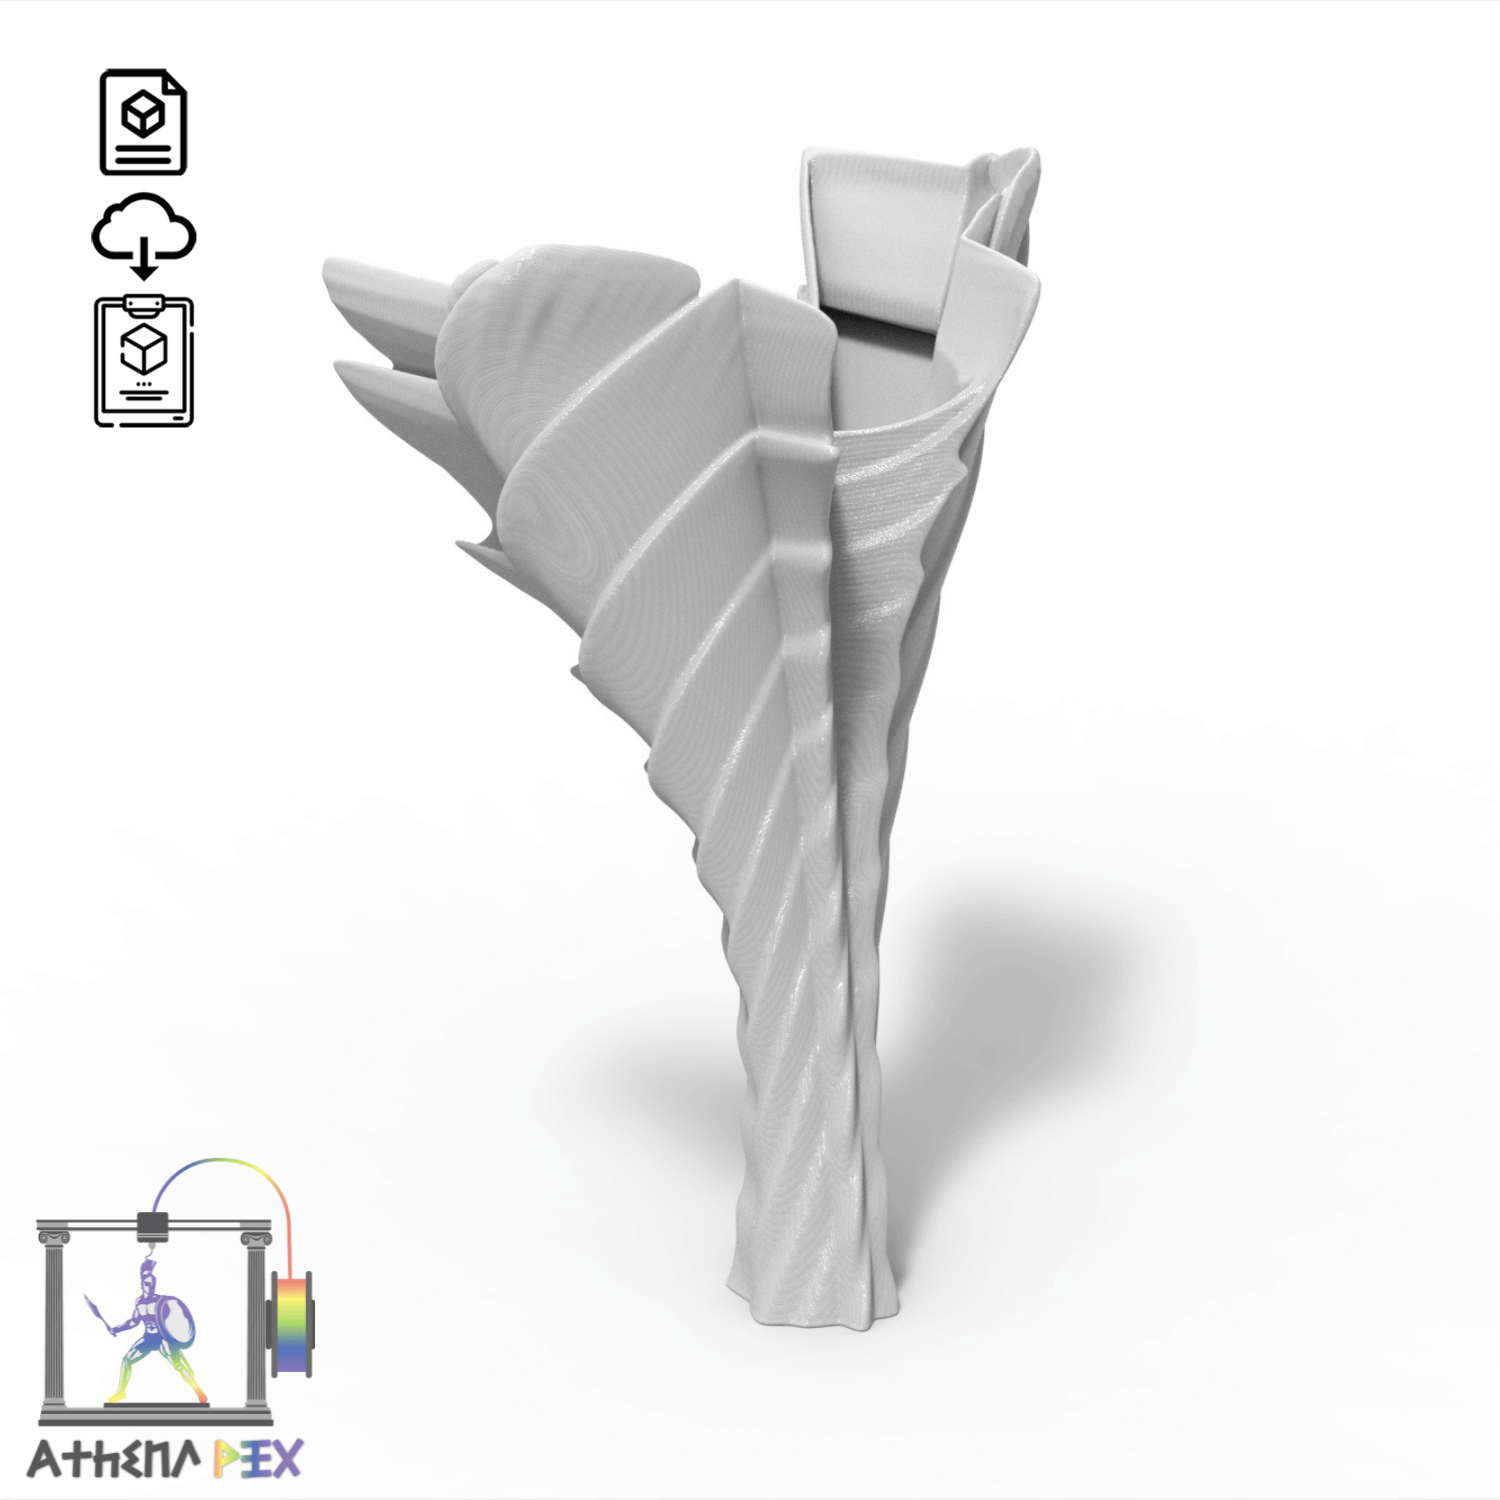 Fichier STL à télécharger | impression 3D - Vase imprimante 3D spirale ange Fichier STL déco à télécharger | impression 3D - Vase imprimante 3D spirale ange Présentation : Depuis la nuit des temps, l’Homme a toujours recherché à posséder le contrôle sur l